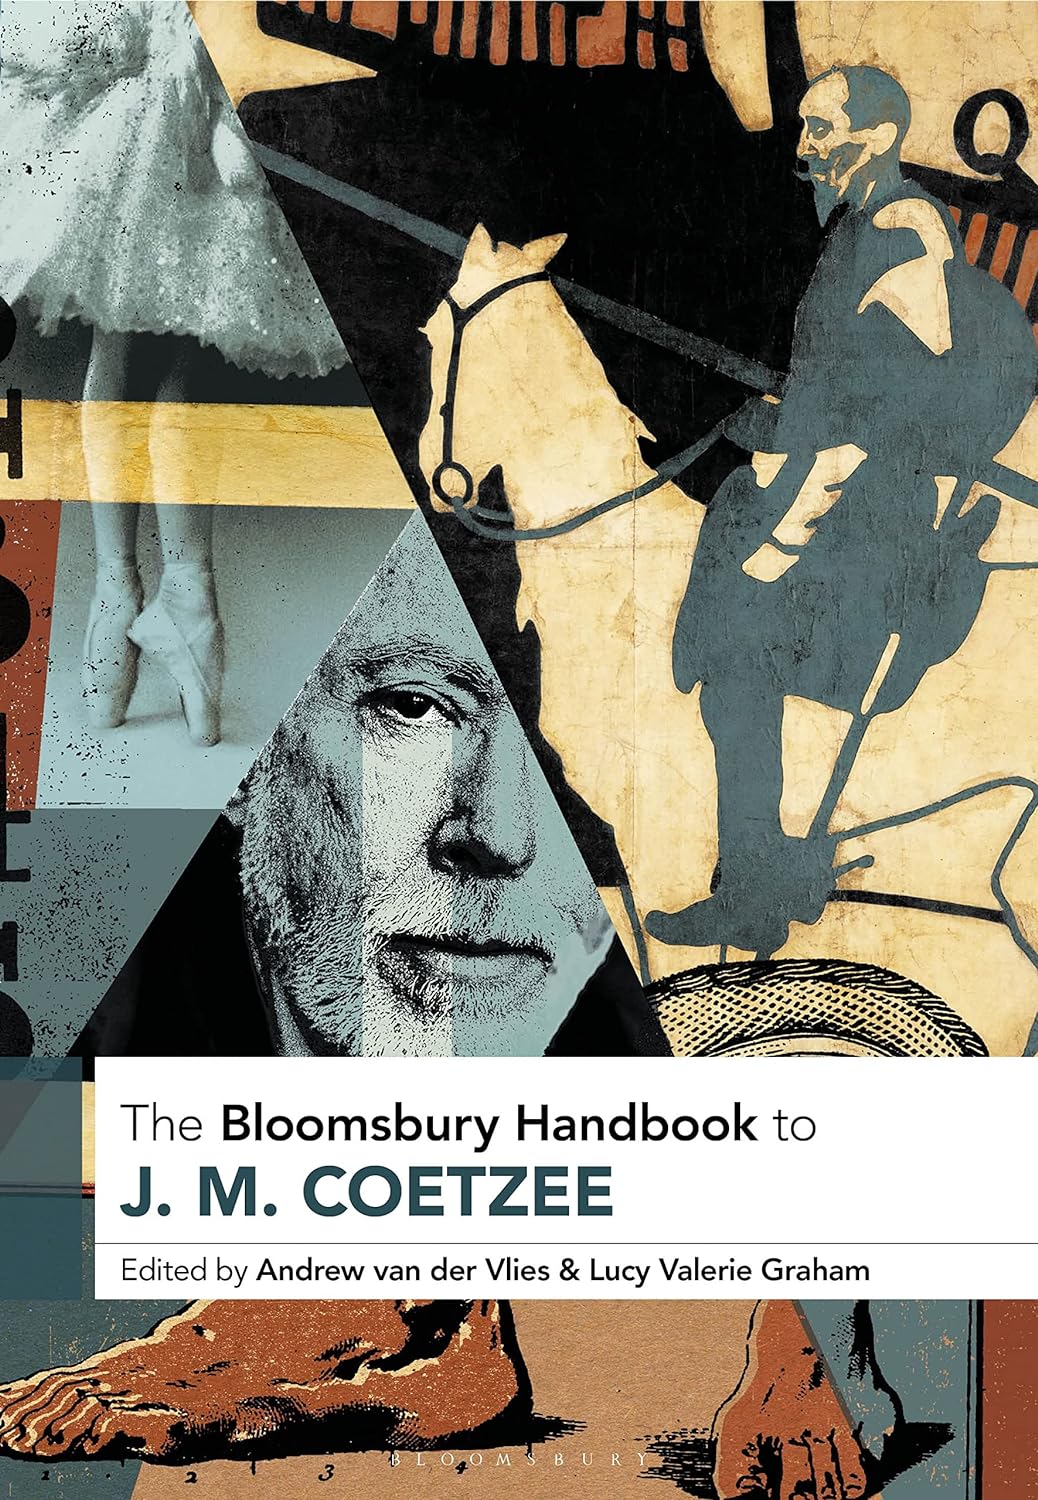 The Bloomsbury Handbook to J.M. Coetzee